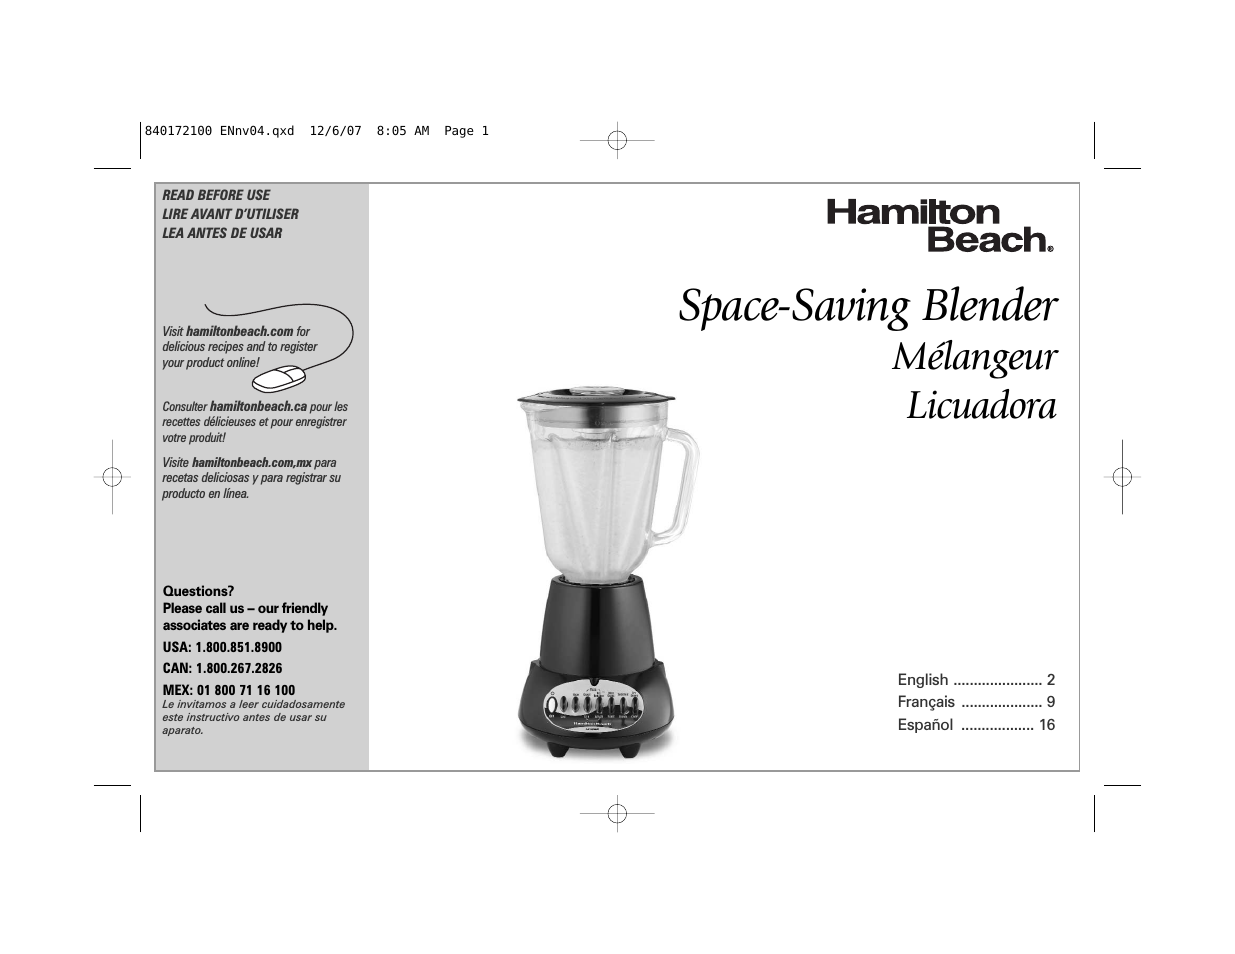 Space-Saving Blender